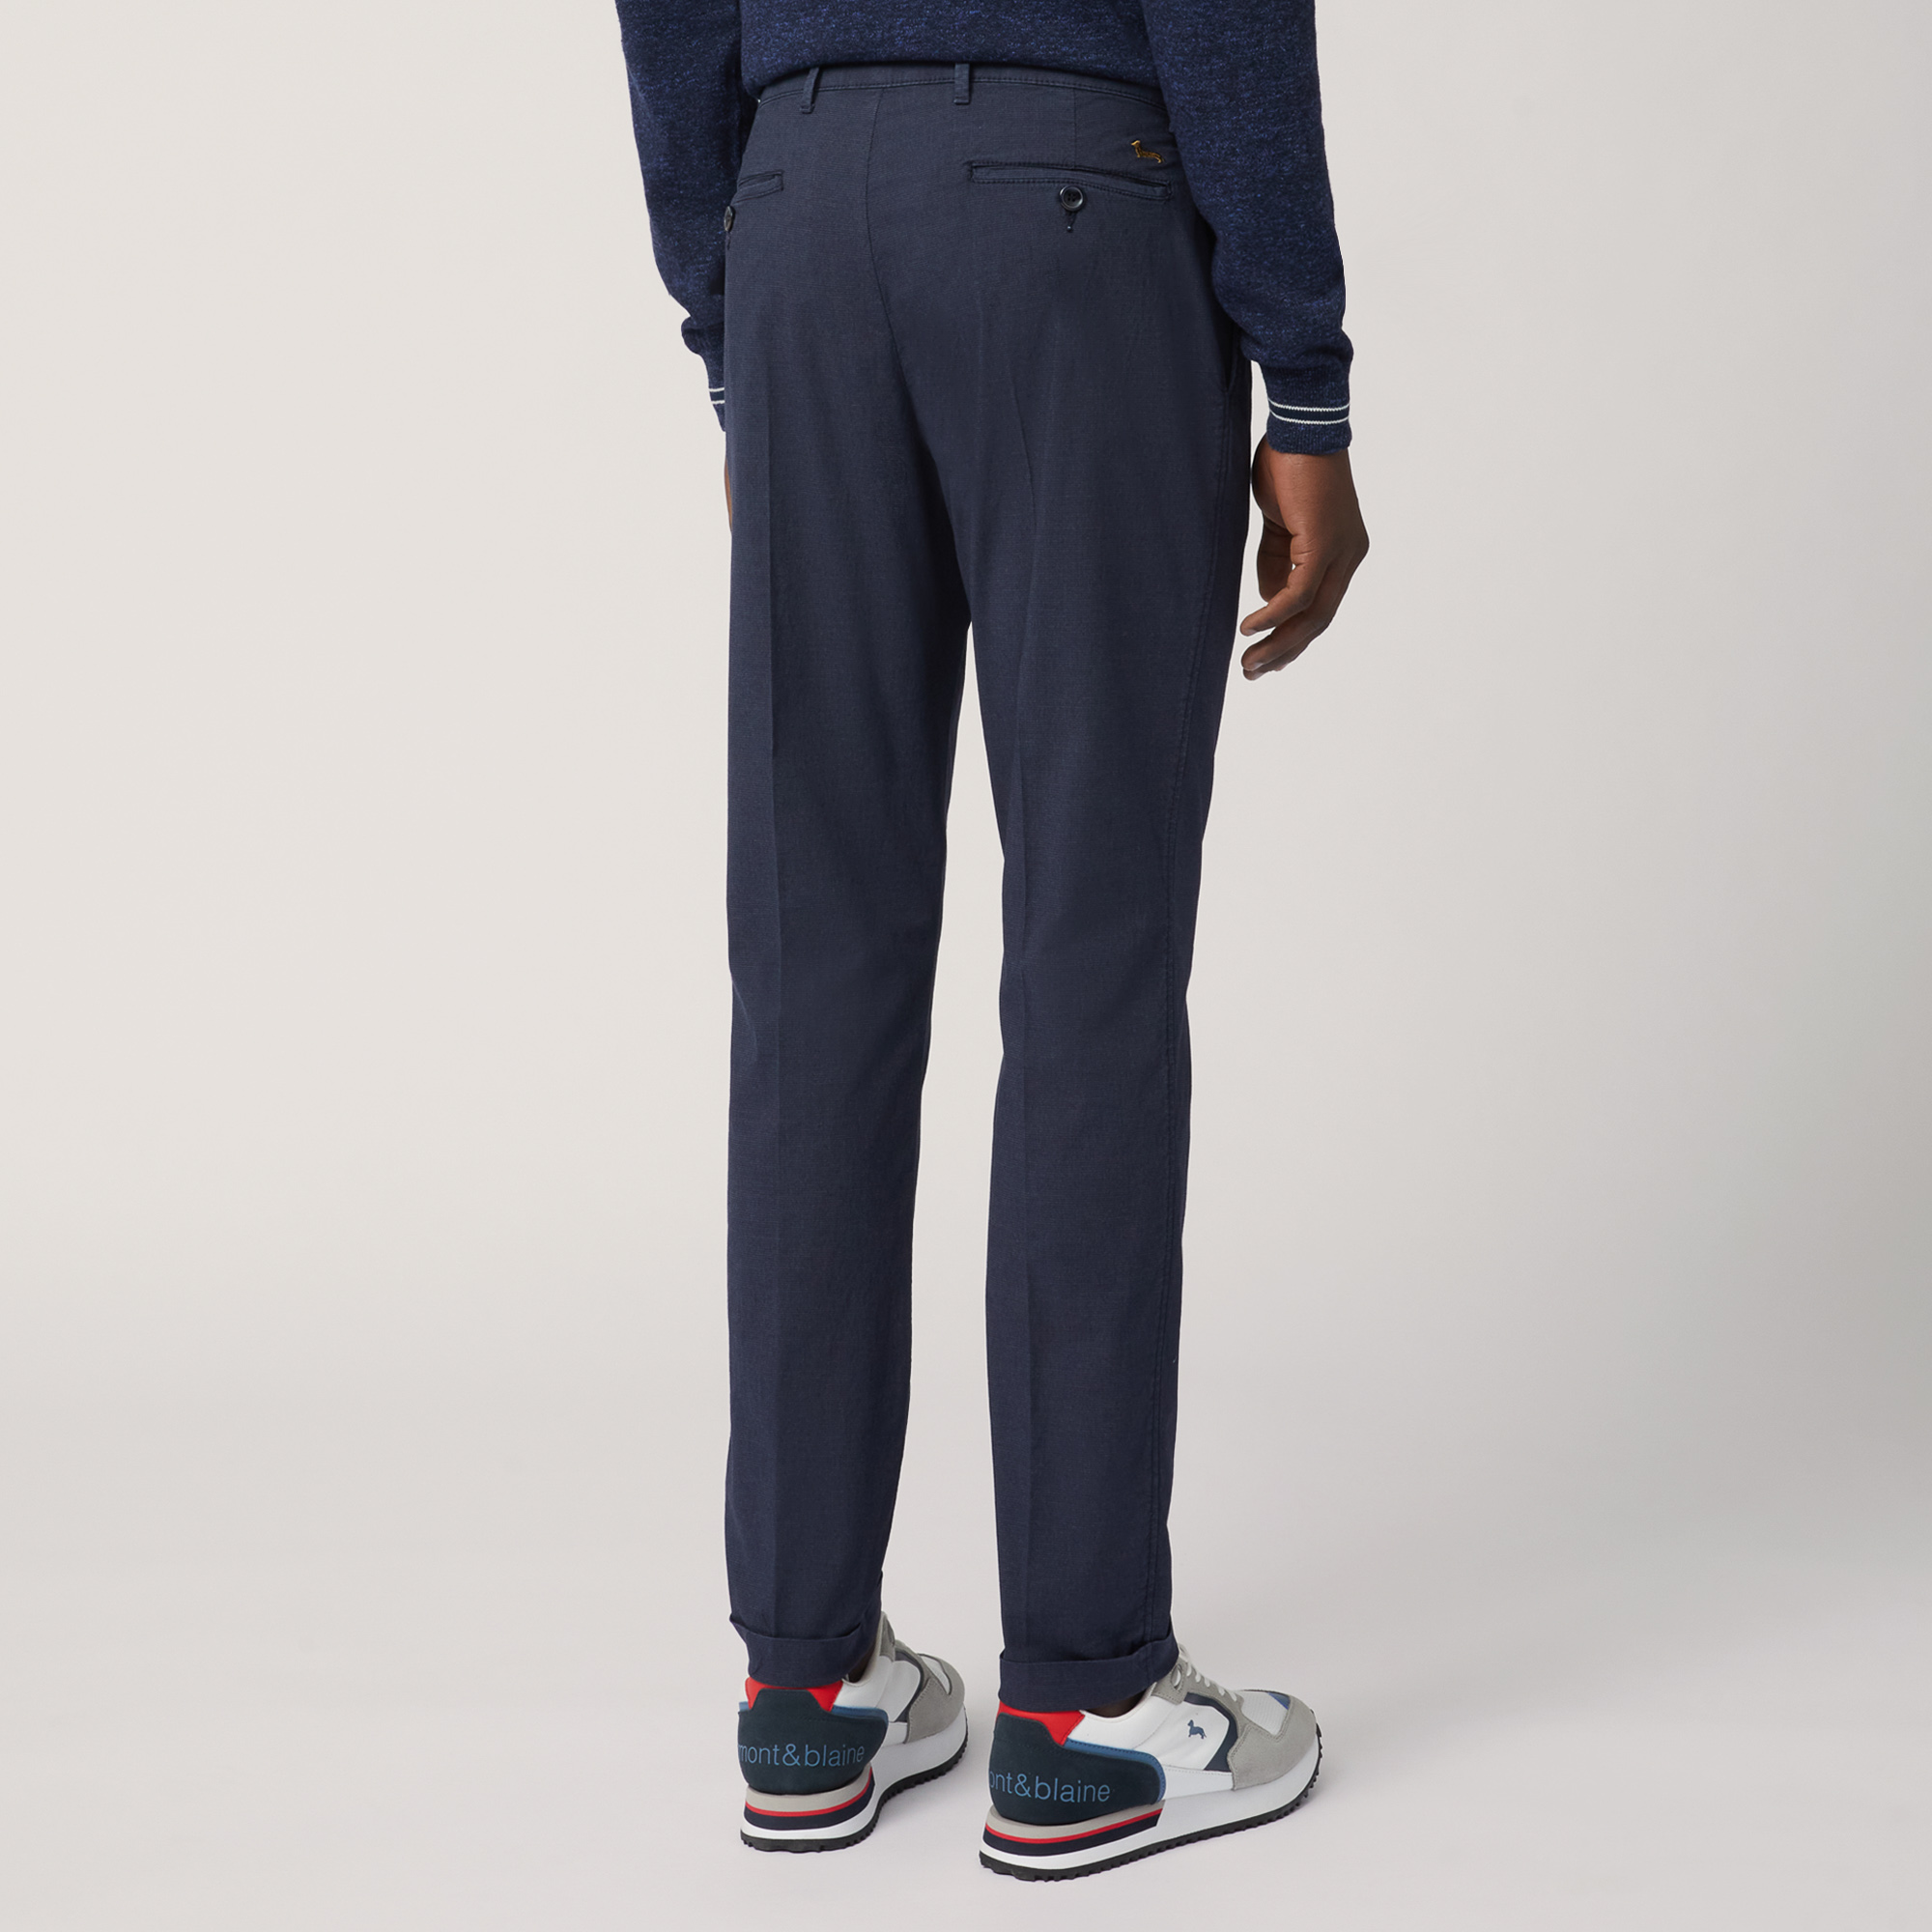 Pantaloni Chino Slim Fit, Blu Navy, large image number 1